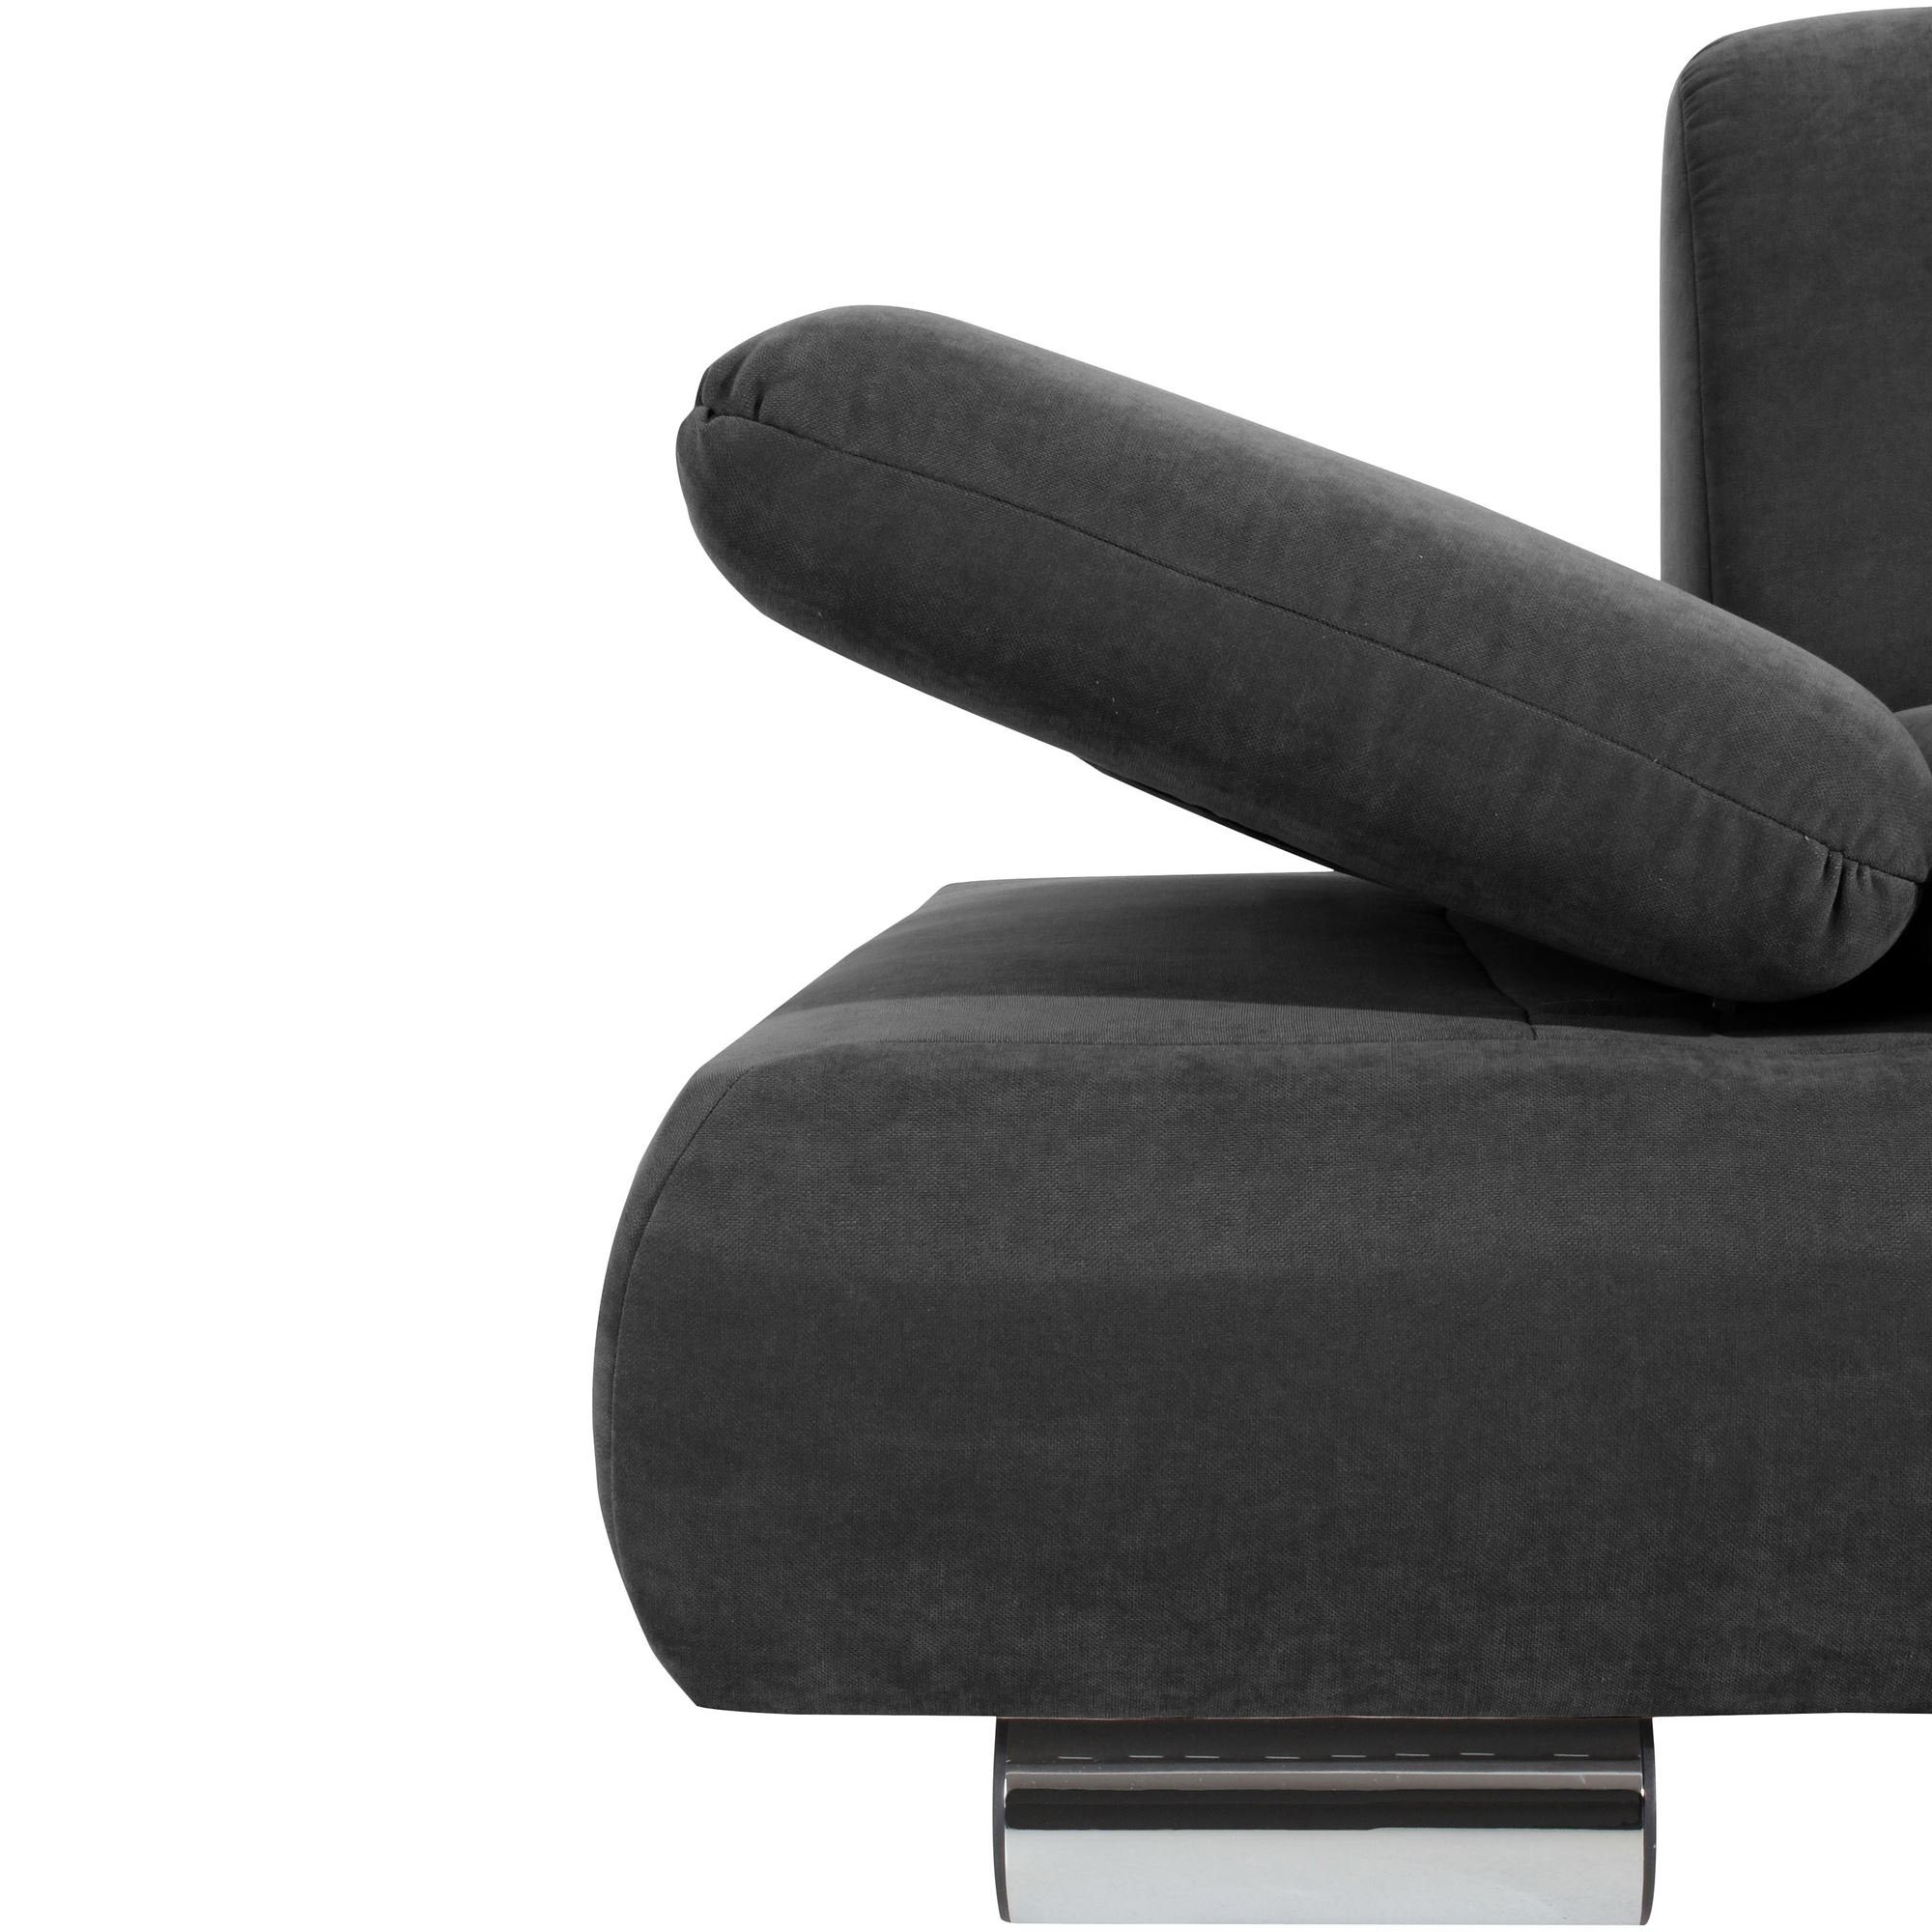 Versand Sofa 1 Sitz inkl. 2-Sitzer Kaye Sofa Kostenlosem Bezug Kessel Metallfuß, aufm 58 Funktionsarmteile,hochwertig Teile, Veloursstoff verstellbare Sparpreis verarbeitet,bequemer